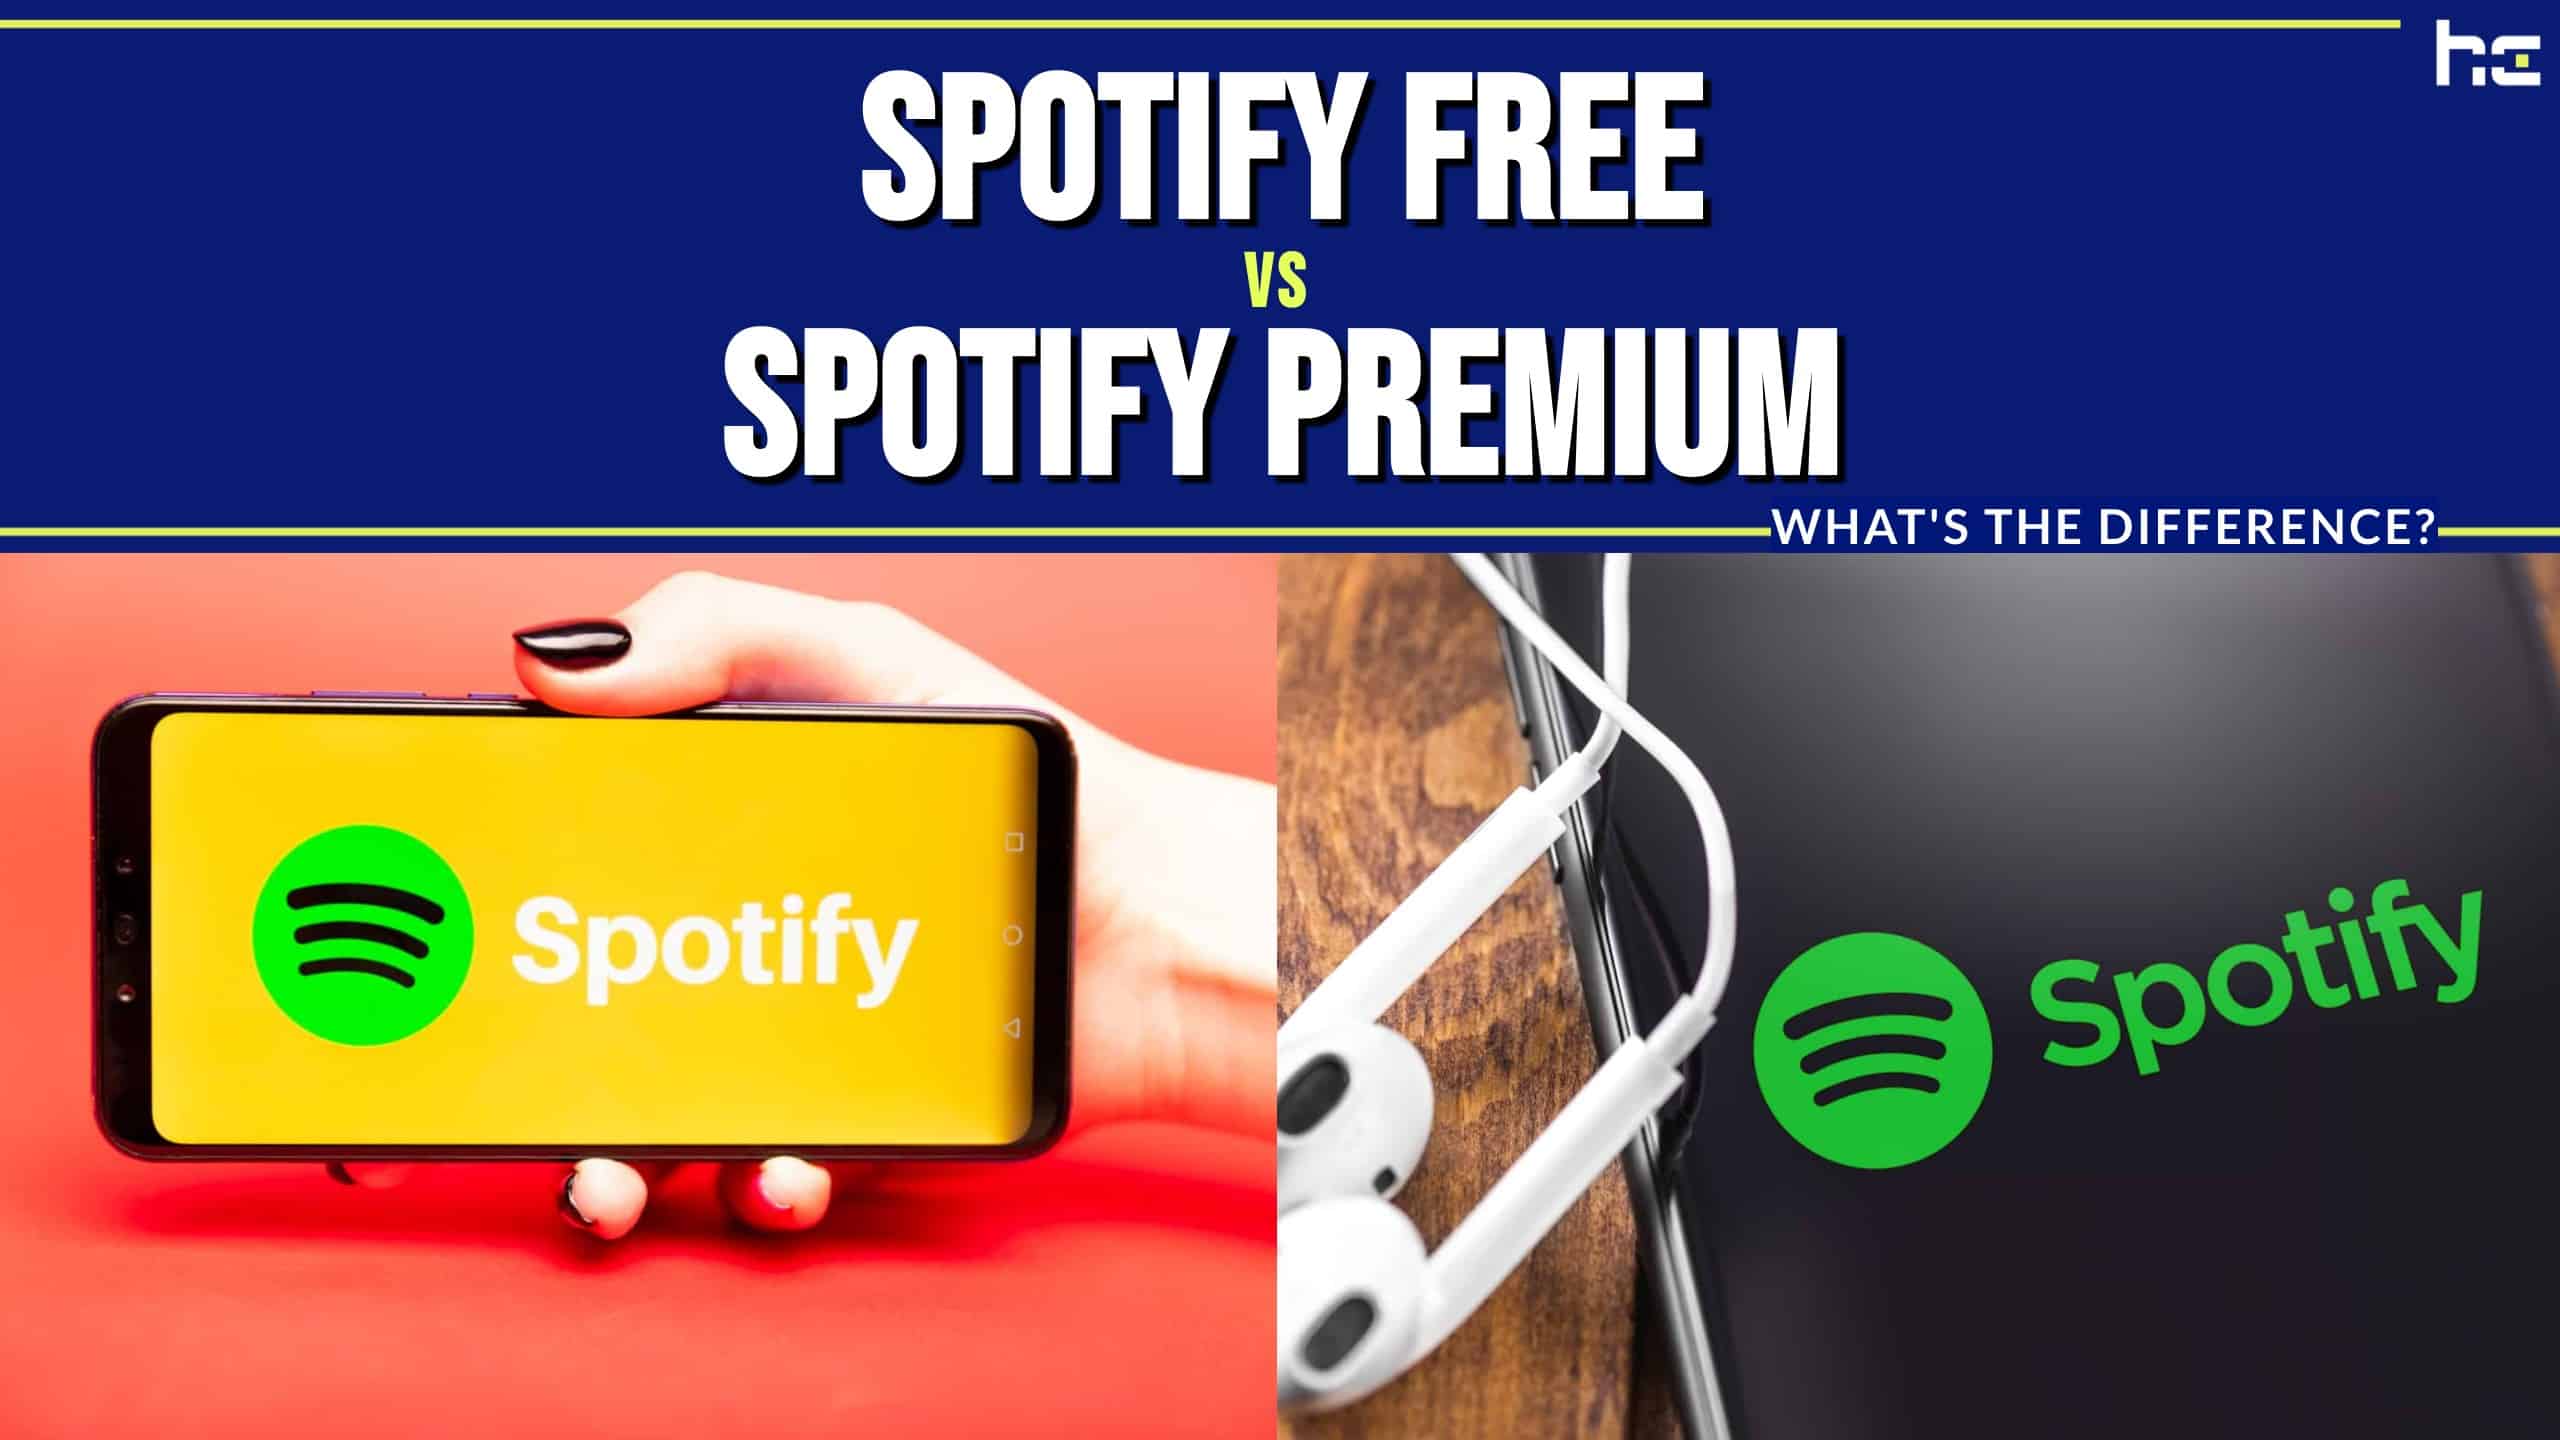 Is Spotify Premium Worth It?